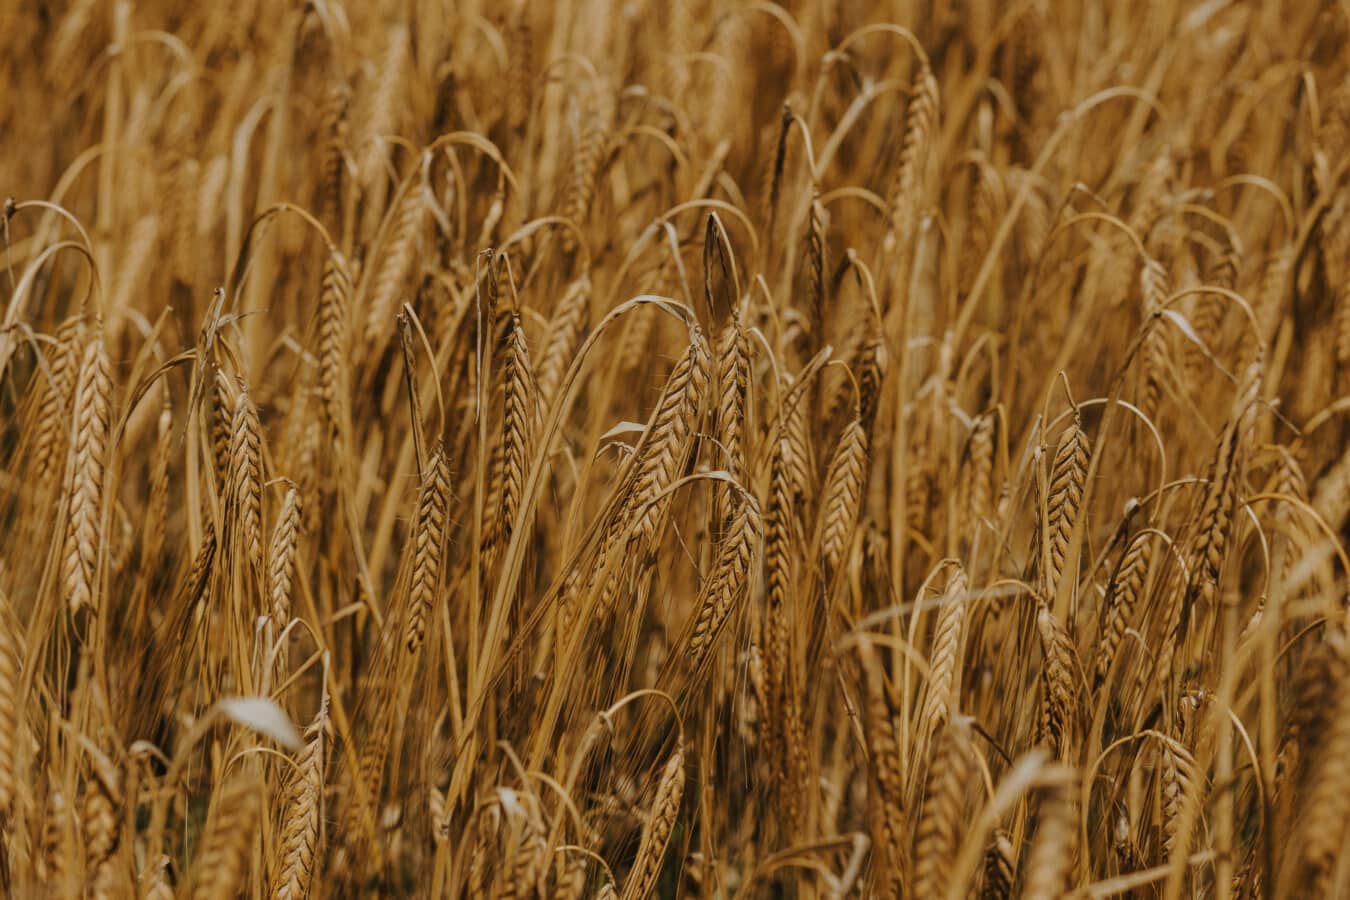 golden glow, wheatfield, wheat, grain, seed, straw, cereal, dry season, flat field, rural